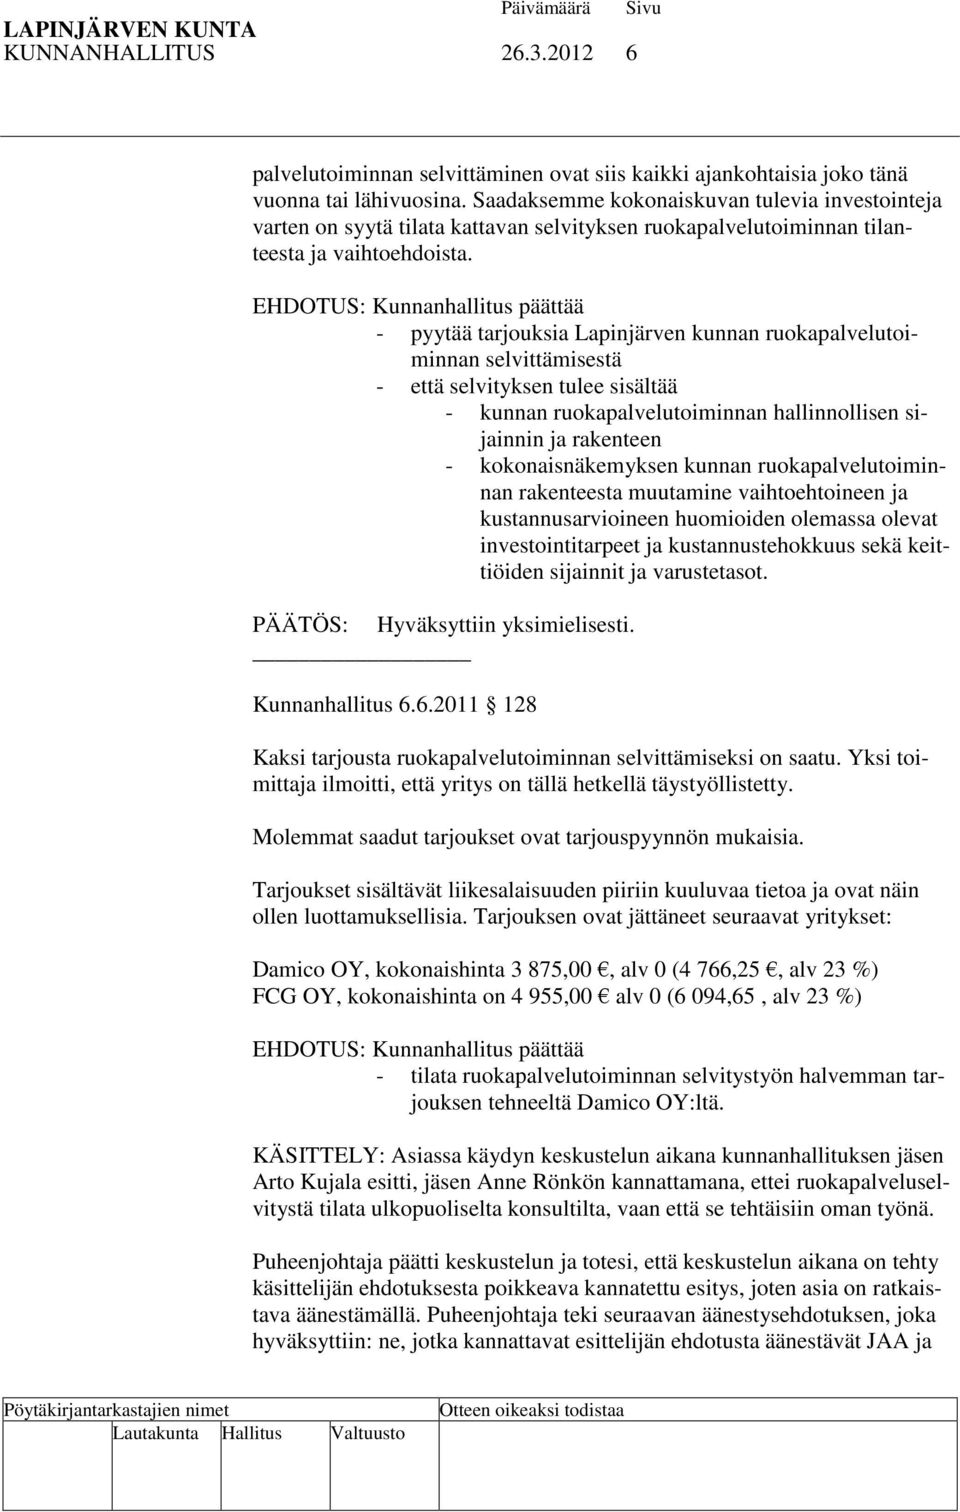 EHDOTUS: Kunnanhallitus päättää - pyytää tarjouksia Lapinjärven kunnan ruokapalvelutoiminnan selvittämisestä - että selvityksen tulee sisältää - kunnan ruokapalvelutoiminnan hallinnollisen sijainnin